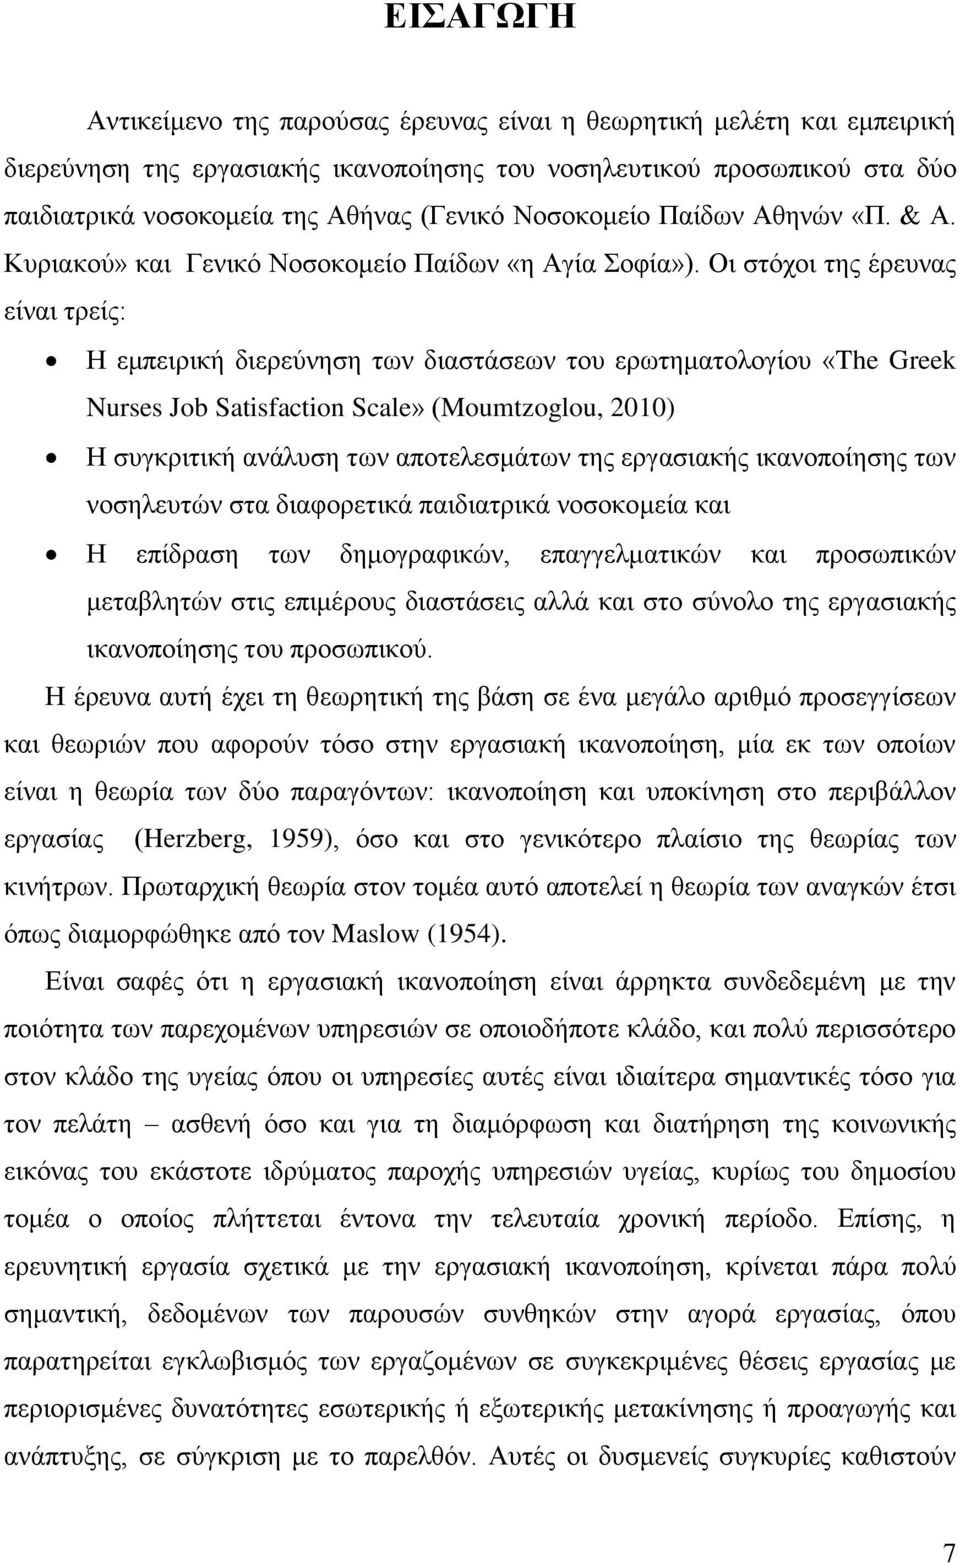 Οη ζηφρνη ηεο έξεπλαο είλαη ηξείο: Ζ εκπεηξηθή δηεξεχλεζε ησλ δηαζηάζεσλ ηνπ εξσηεκαηνινγίνπ «The Greek Nurses Job Satisfaction Scale» (Moumtzoglou, 2010) Ζ ζπγθξηηηθή αλάιπζε ησλ απνηειεζκάησλ ηεο